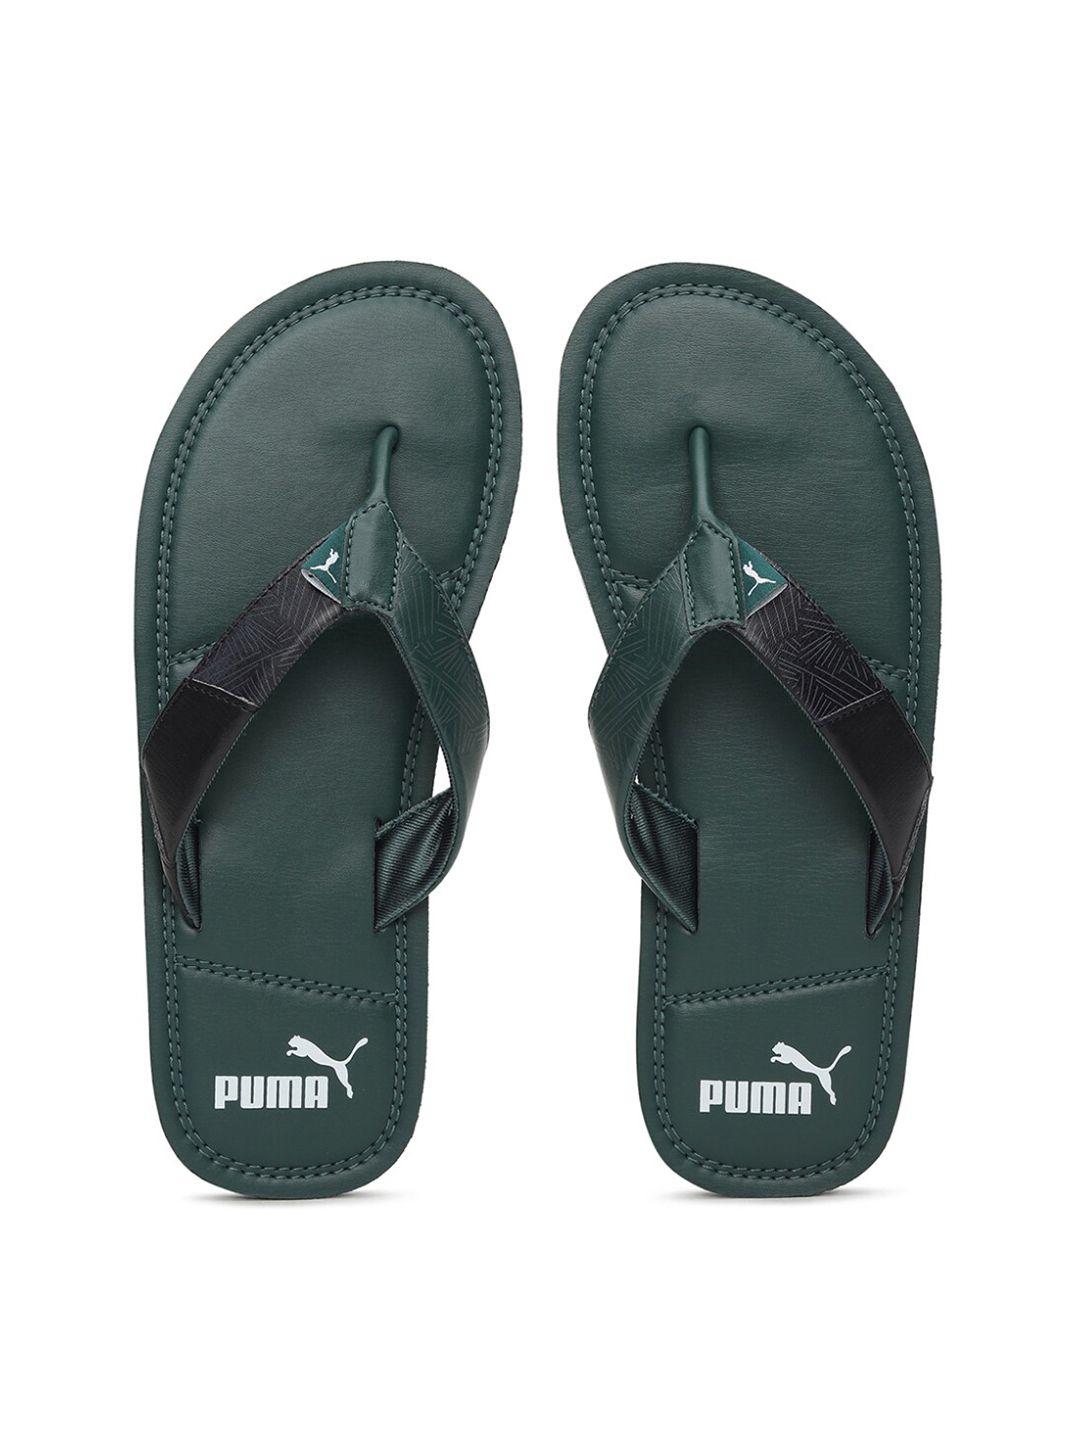 puma men green & black solid creat thong flip flops